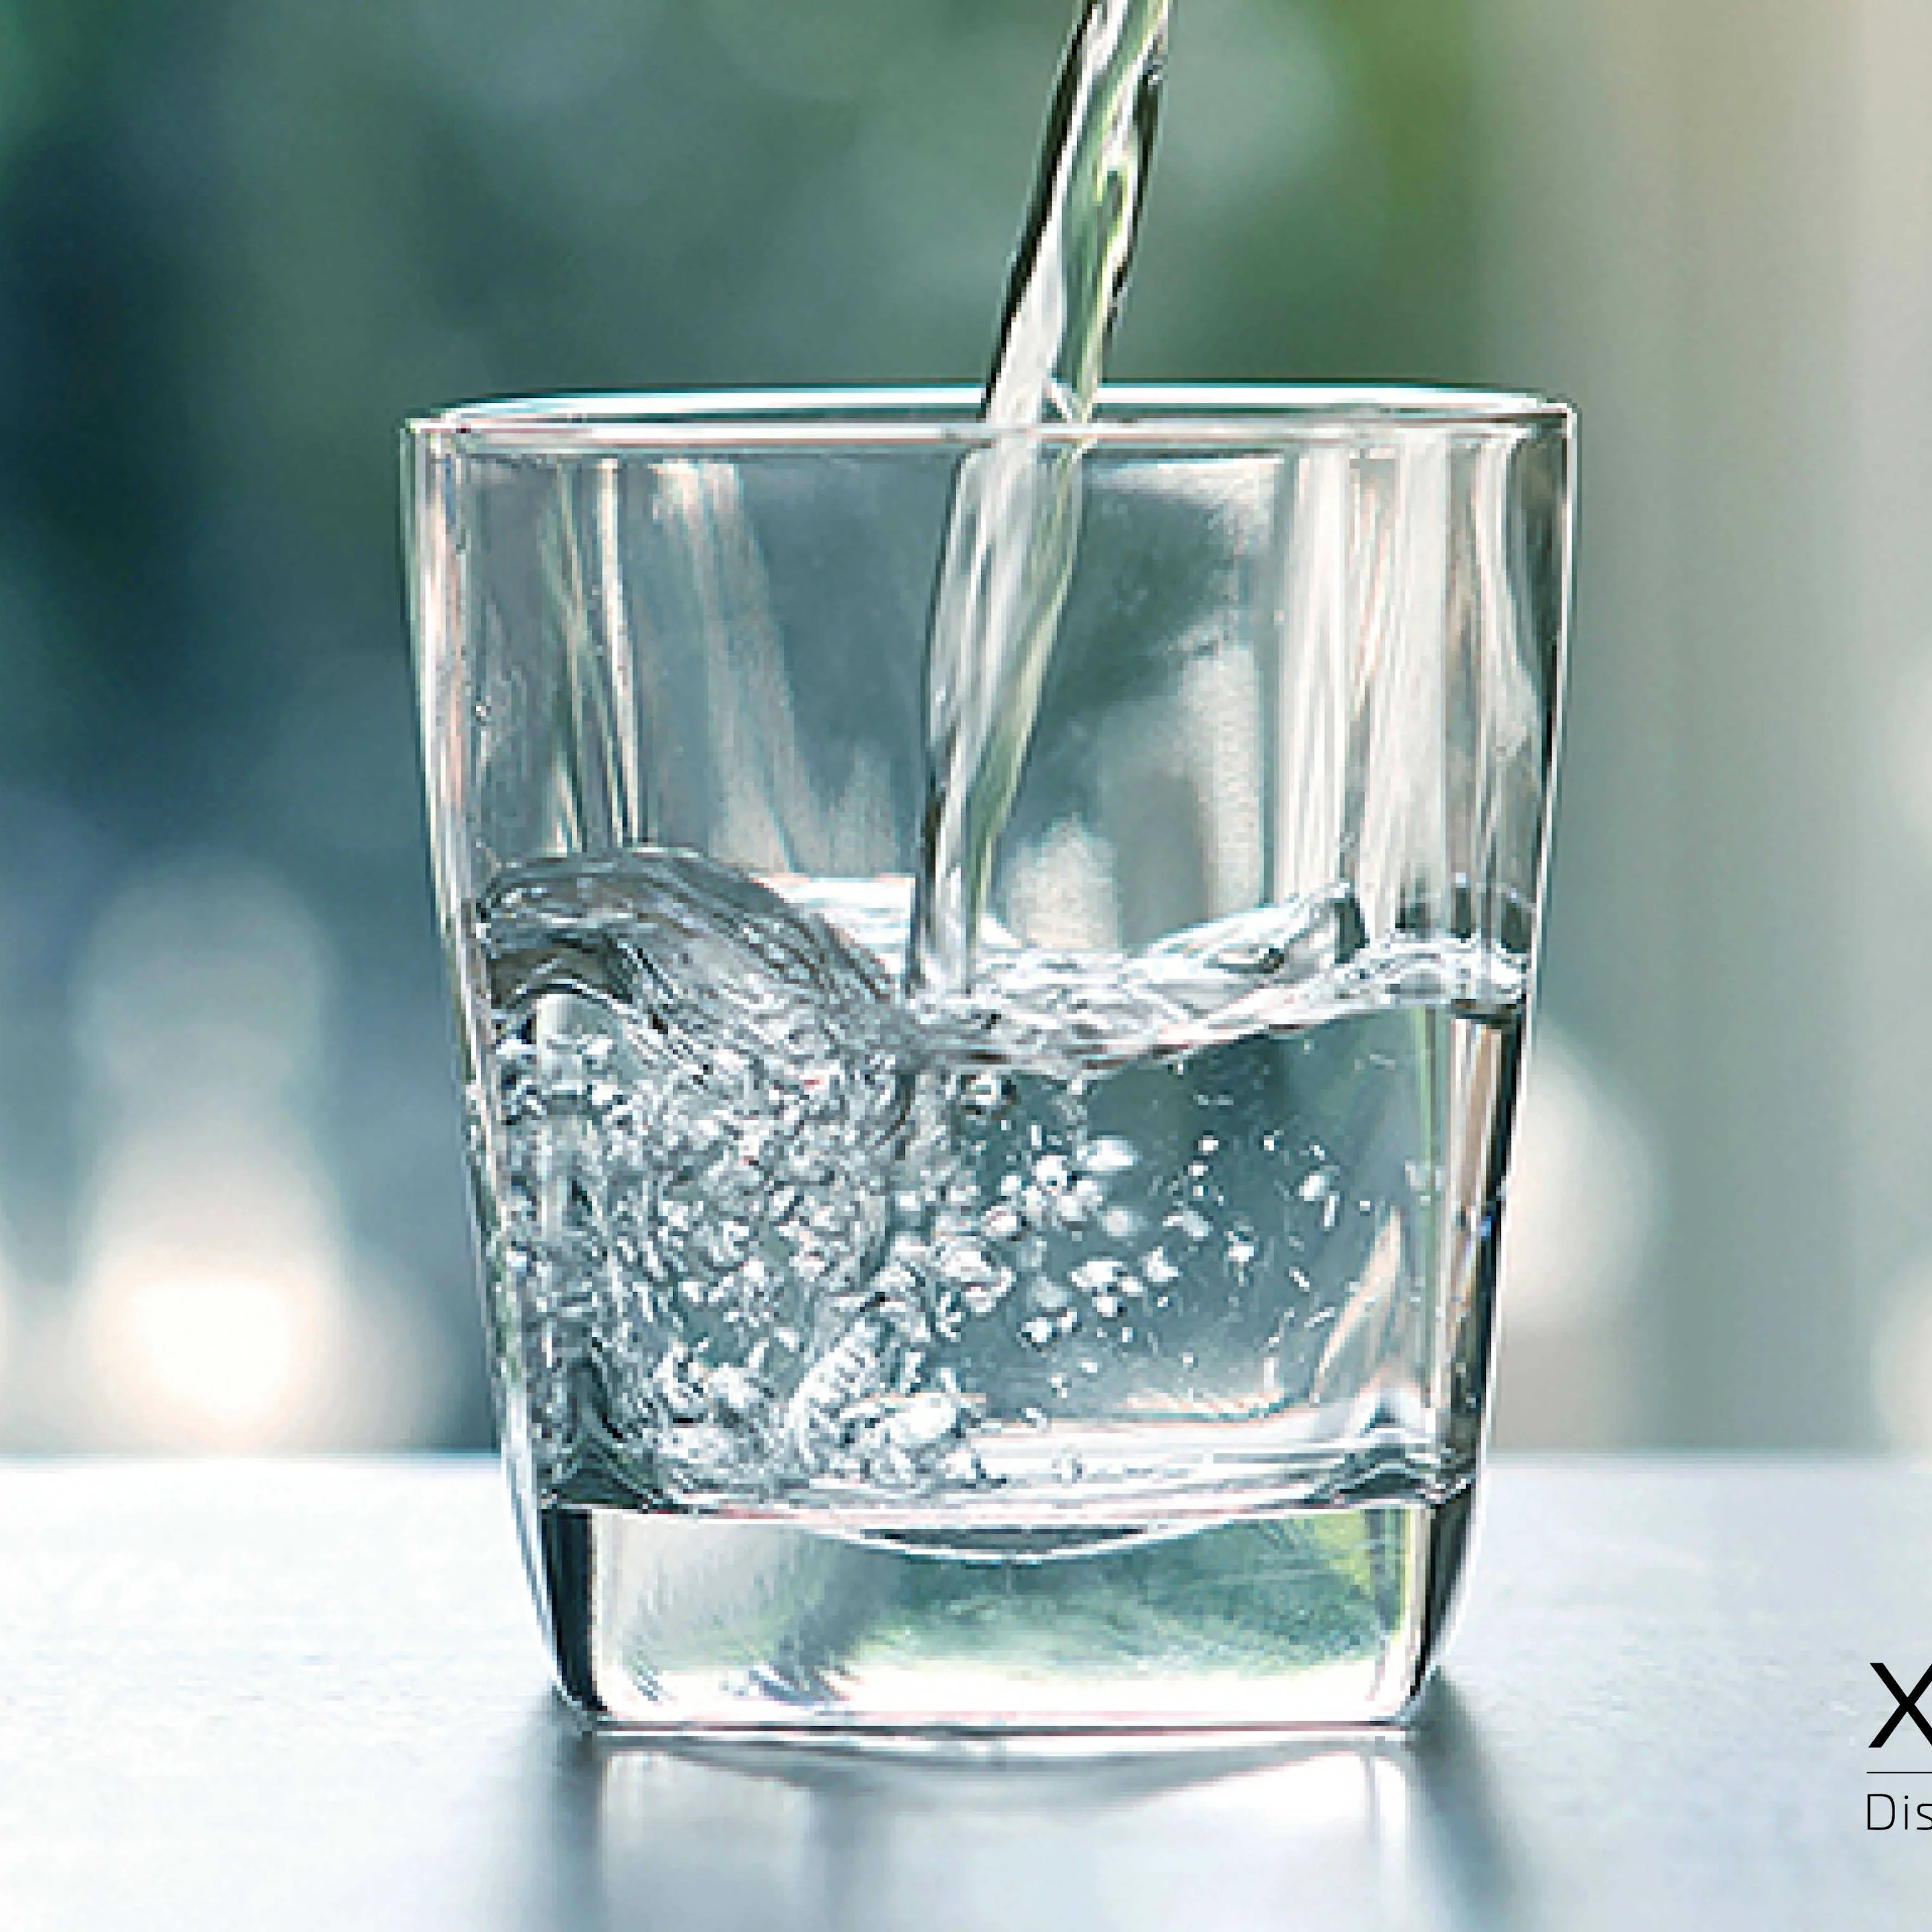 Xinix Prepp-Kit: Vattendesinfektion baserad på stabiliserad klordioxid (10 av 12)